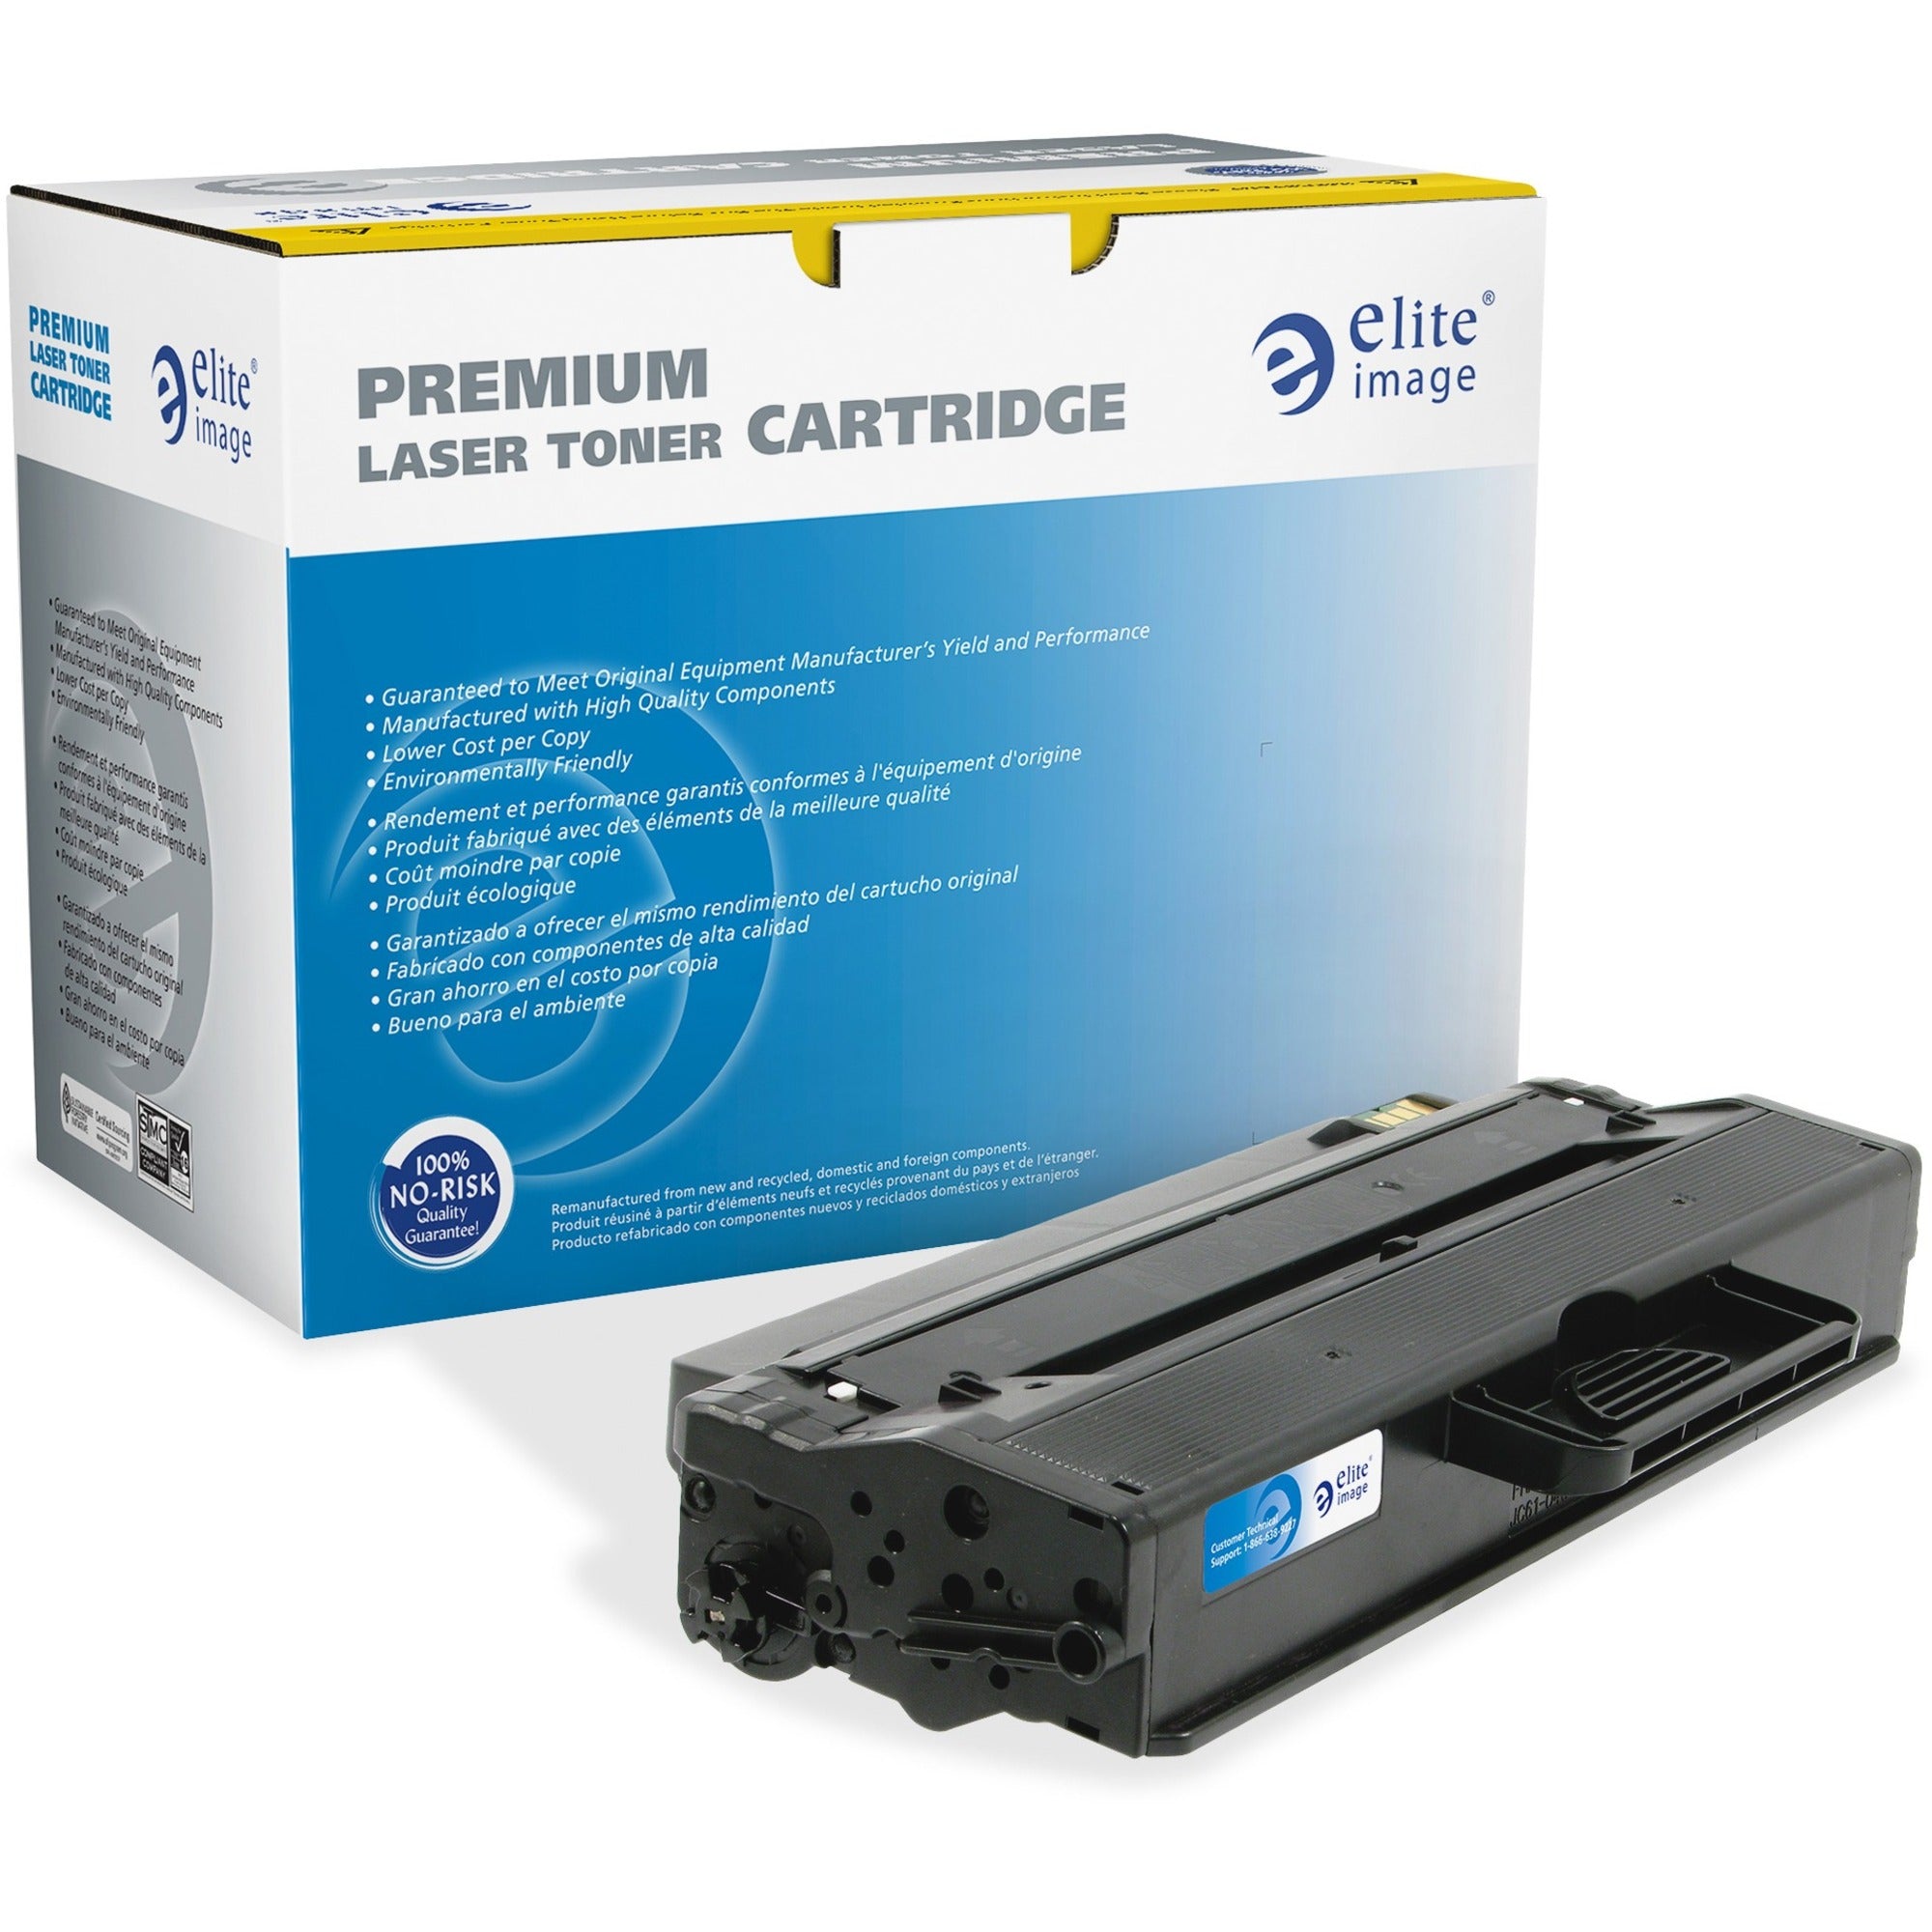 Elite Image Remanufactured Toner Cartridge Alternative For Dell - Laser - 2500 Pages - Black - 1 Each - 1